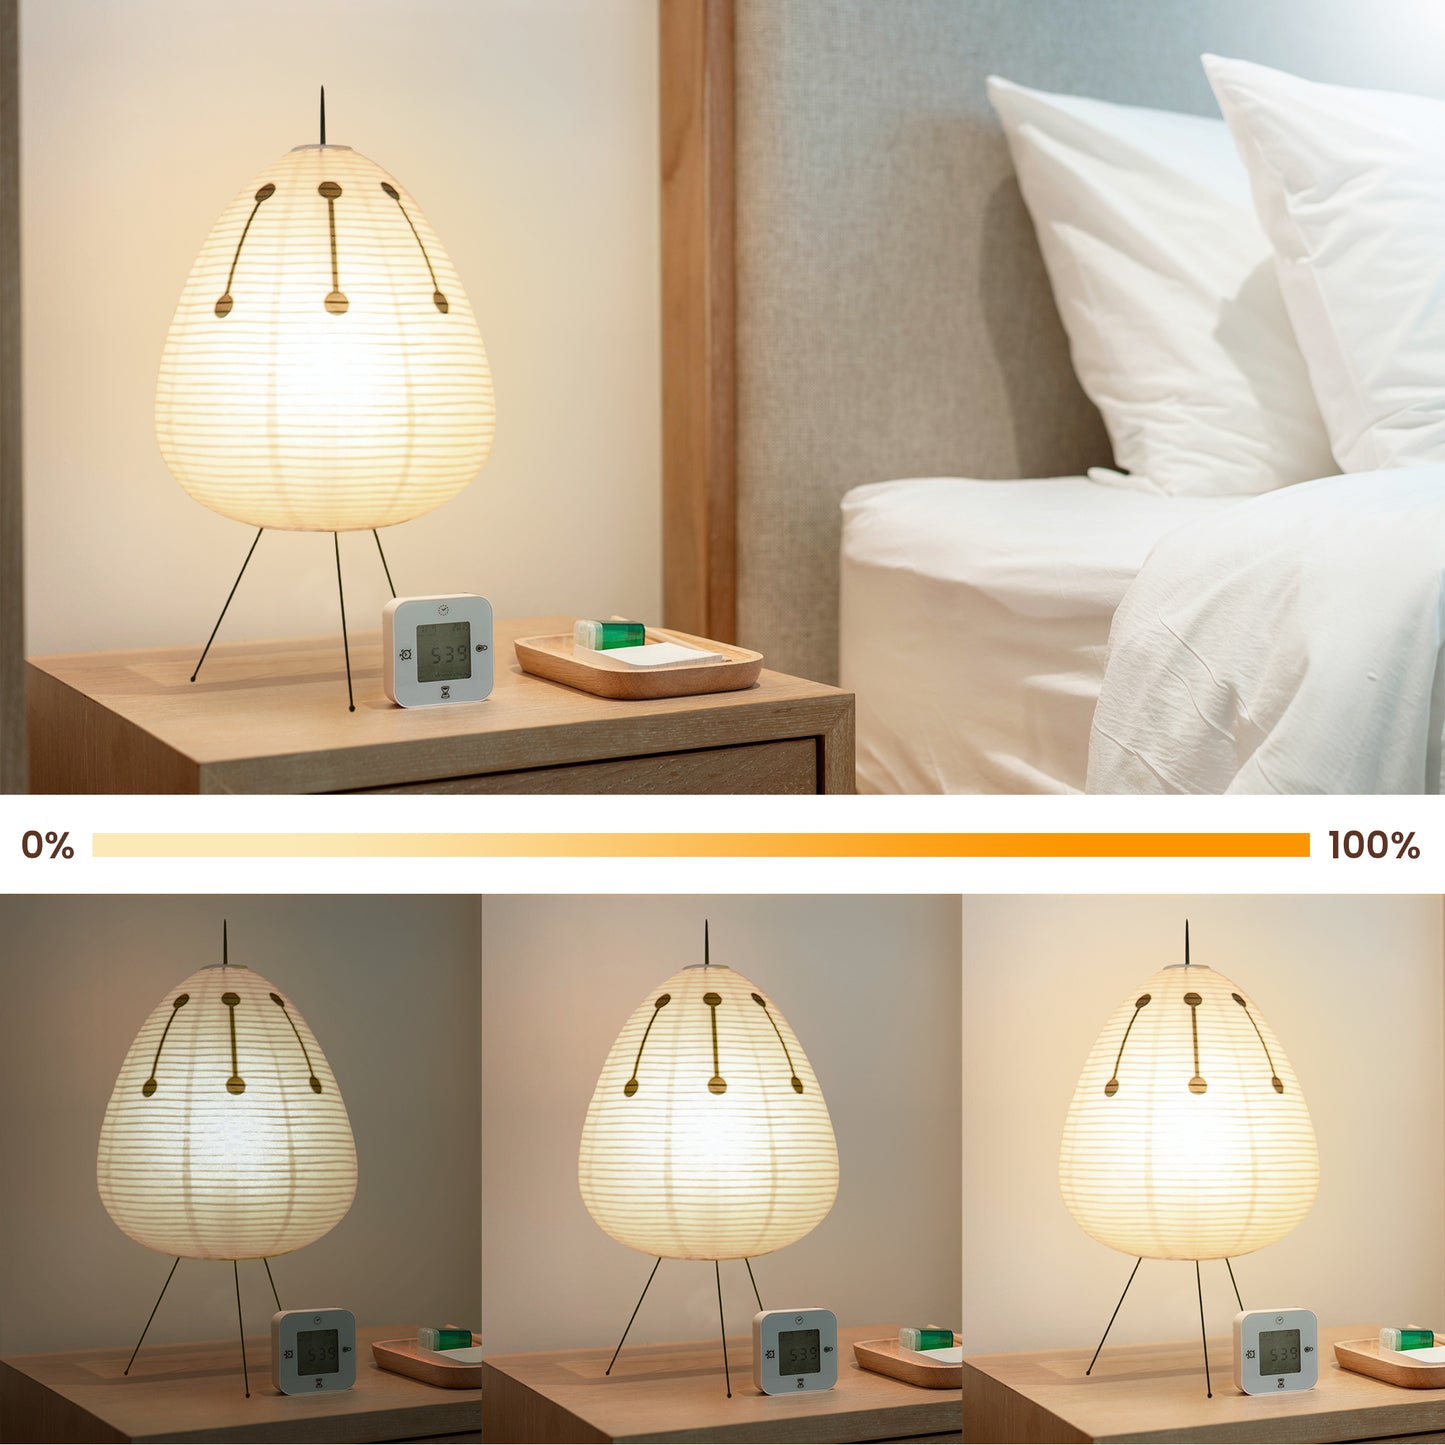 NOGY Akari Paper Lamp with Black Design • Akari Lantern Lamp • Rice Paper Lantern Lamp • Japanese Lamp • White Paper Lamp (Black/White)